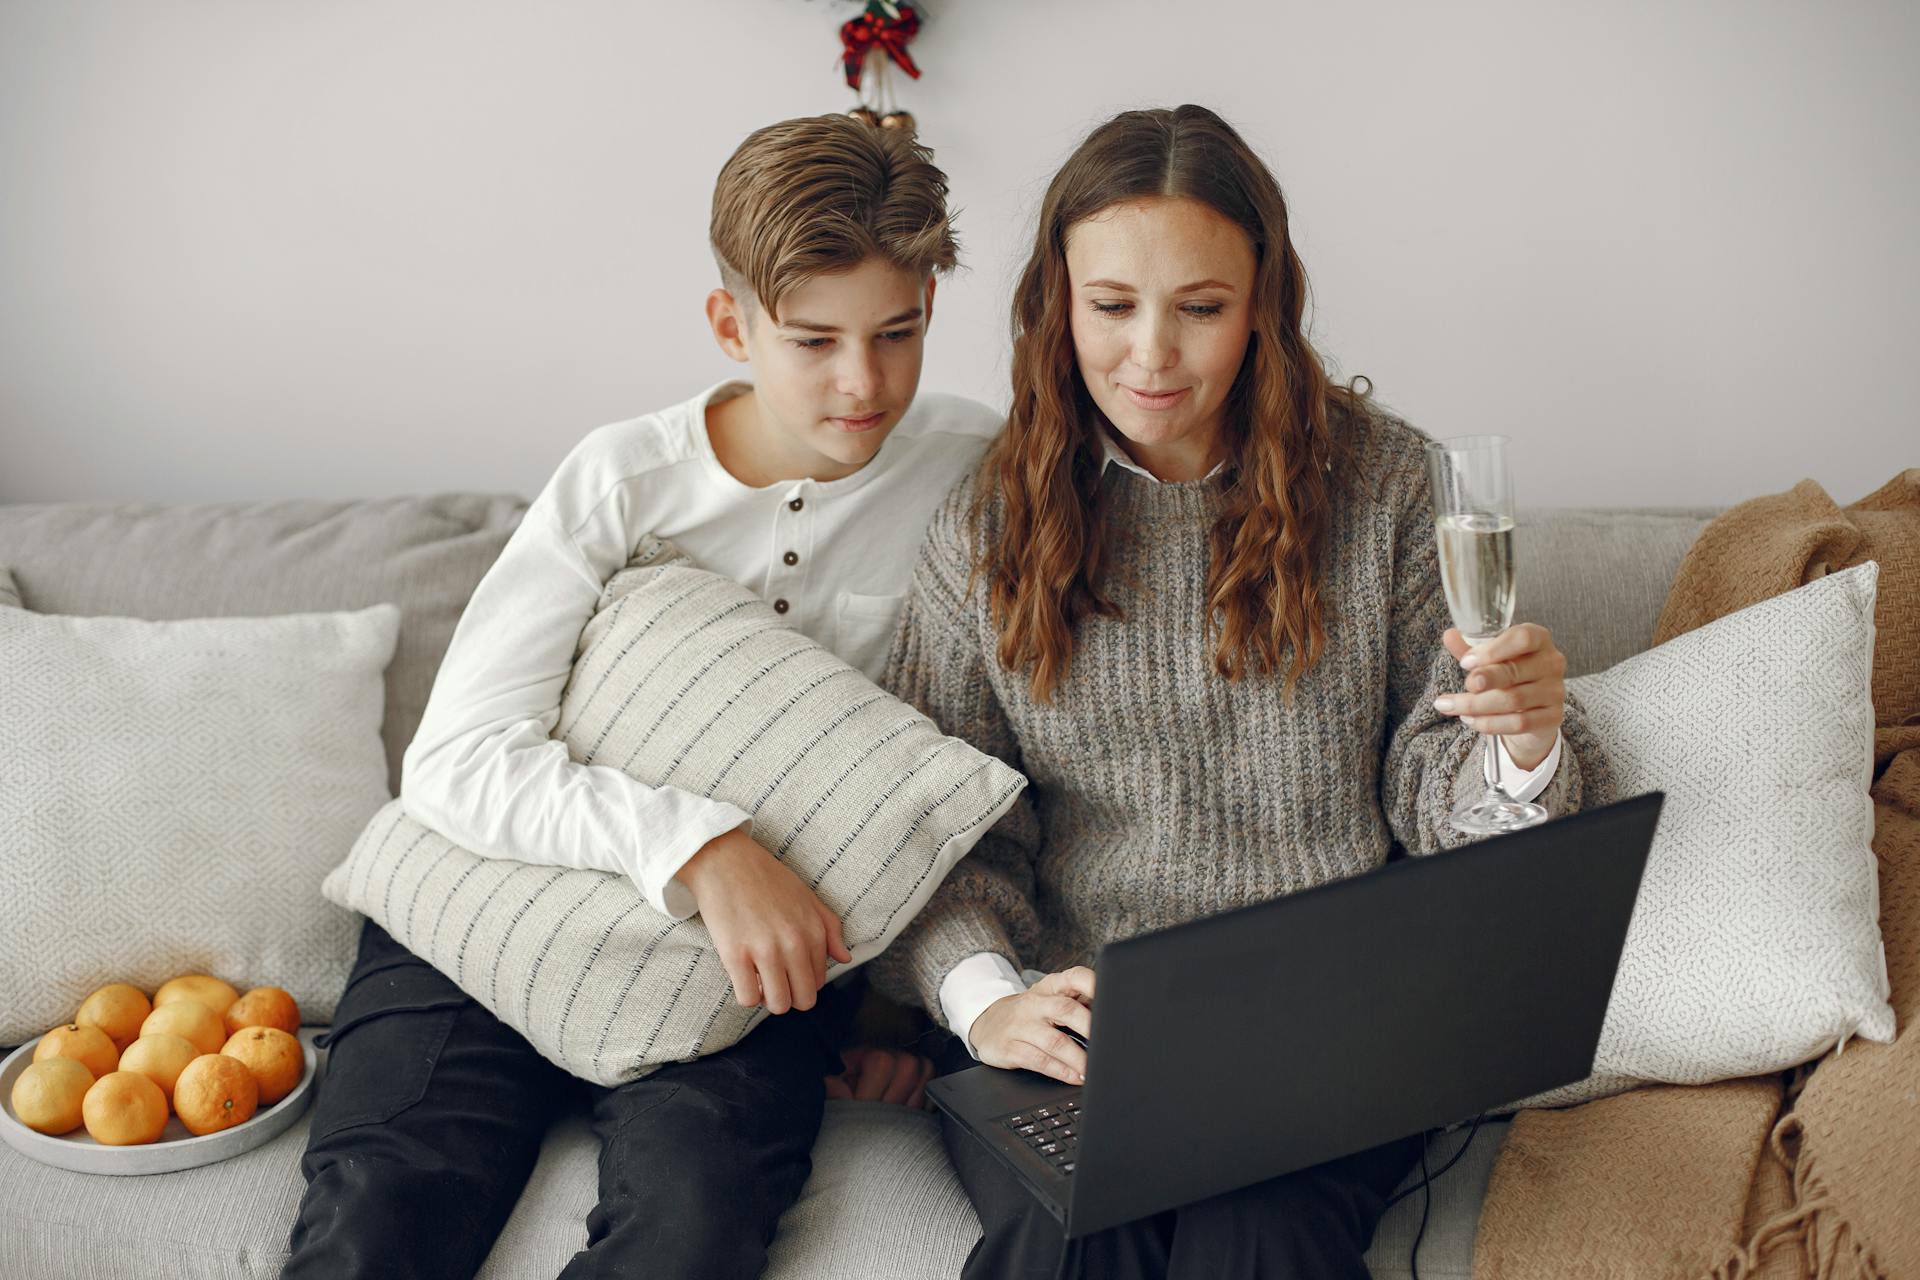 Un dúo madre-hijo sentado en un sofá y utilizando un ordenador portátil | Fuente: Pexels